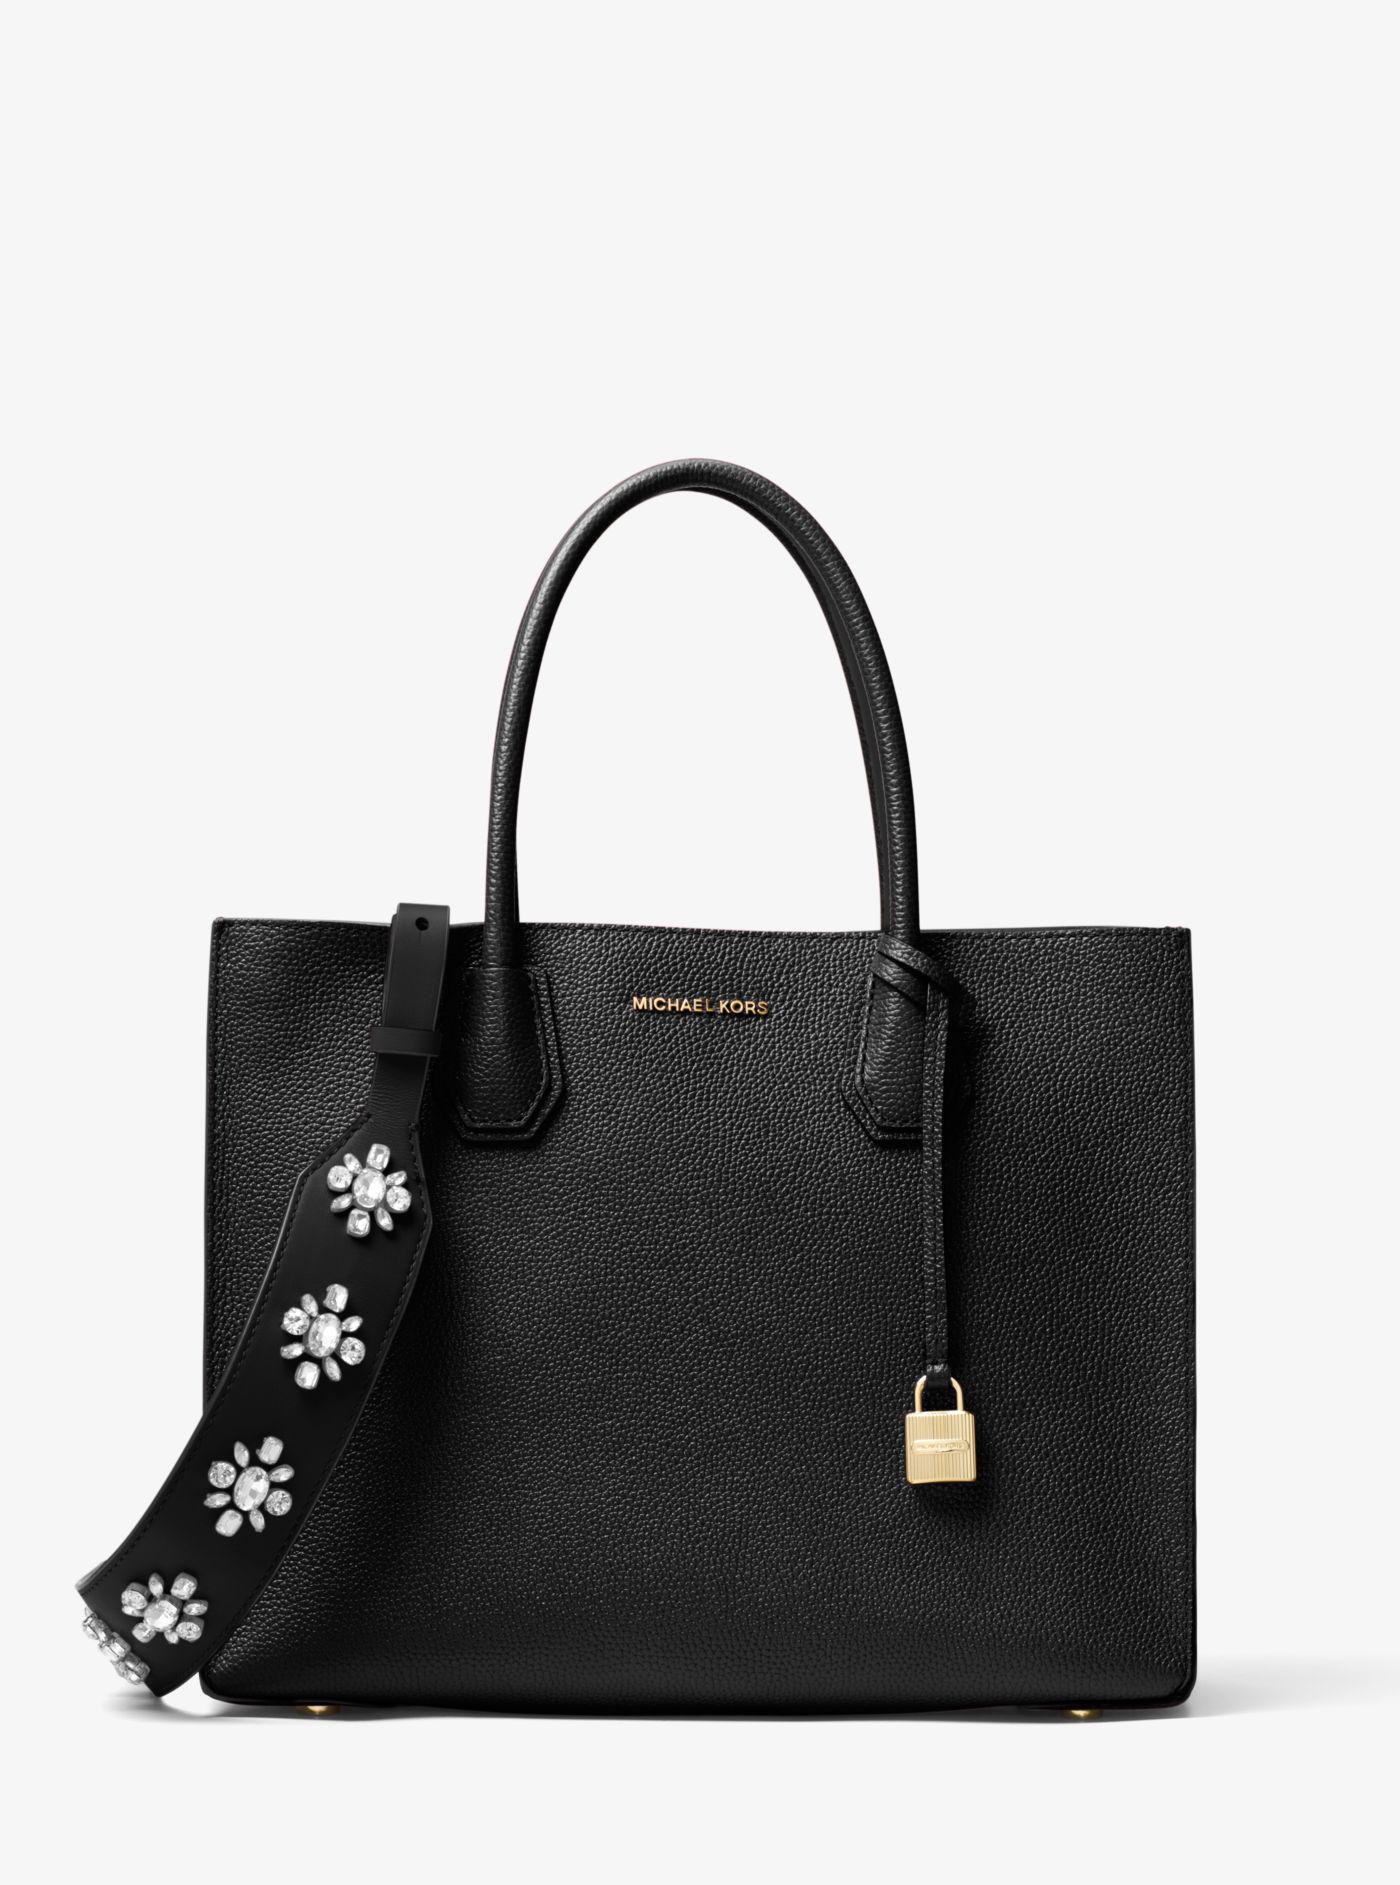 Michael Kors Floral-embellished Leather Handbag Strap in Black | Lyst